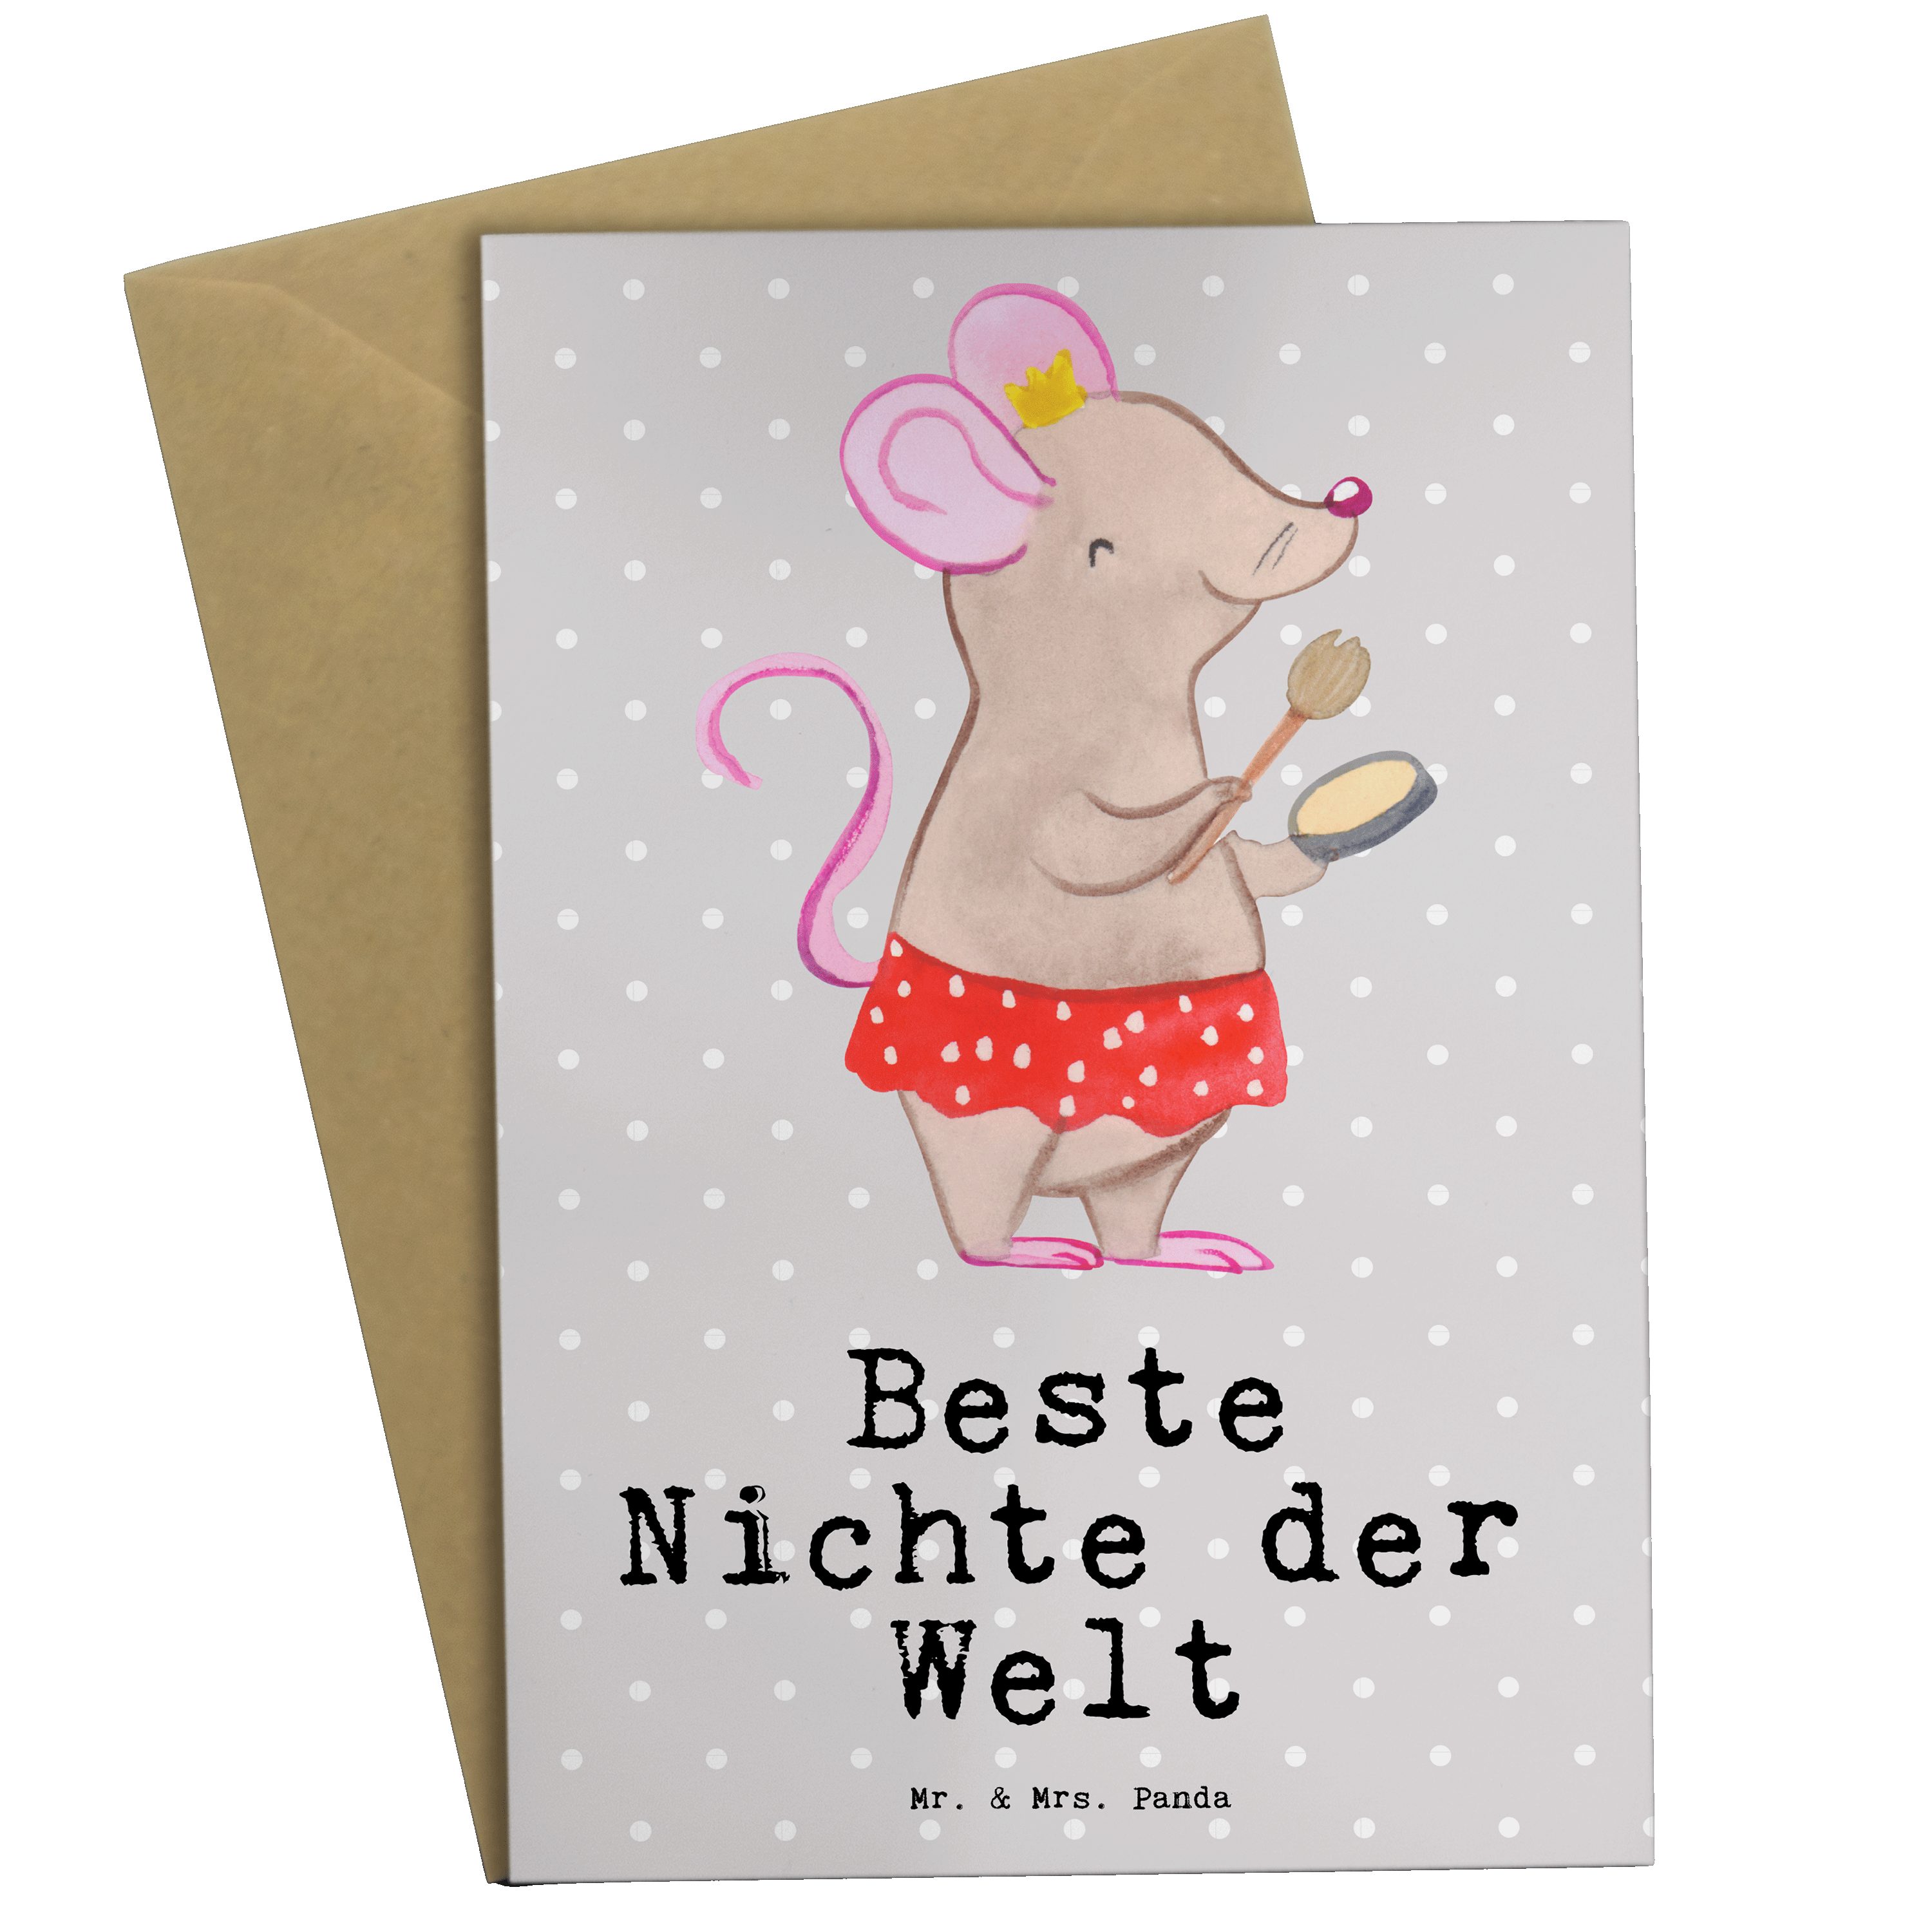 Mr. & Mrs. Panda Grußkarte Maus Beste Nichte der Welt - Grau Pastell - Geschenk, Klappkarte, Kar